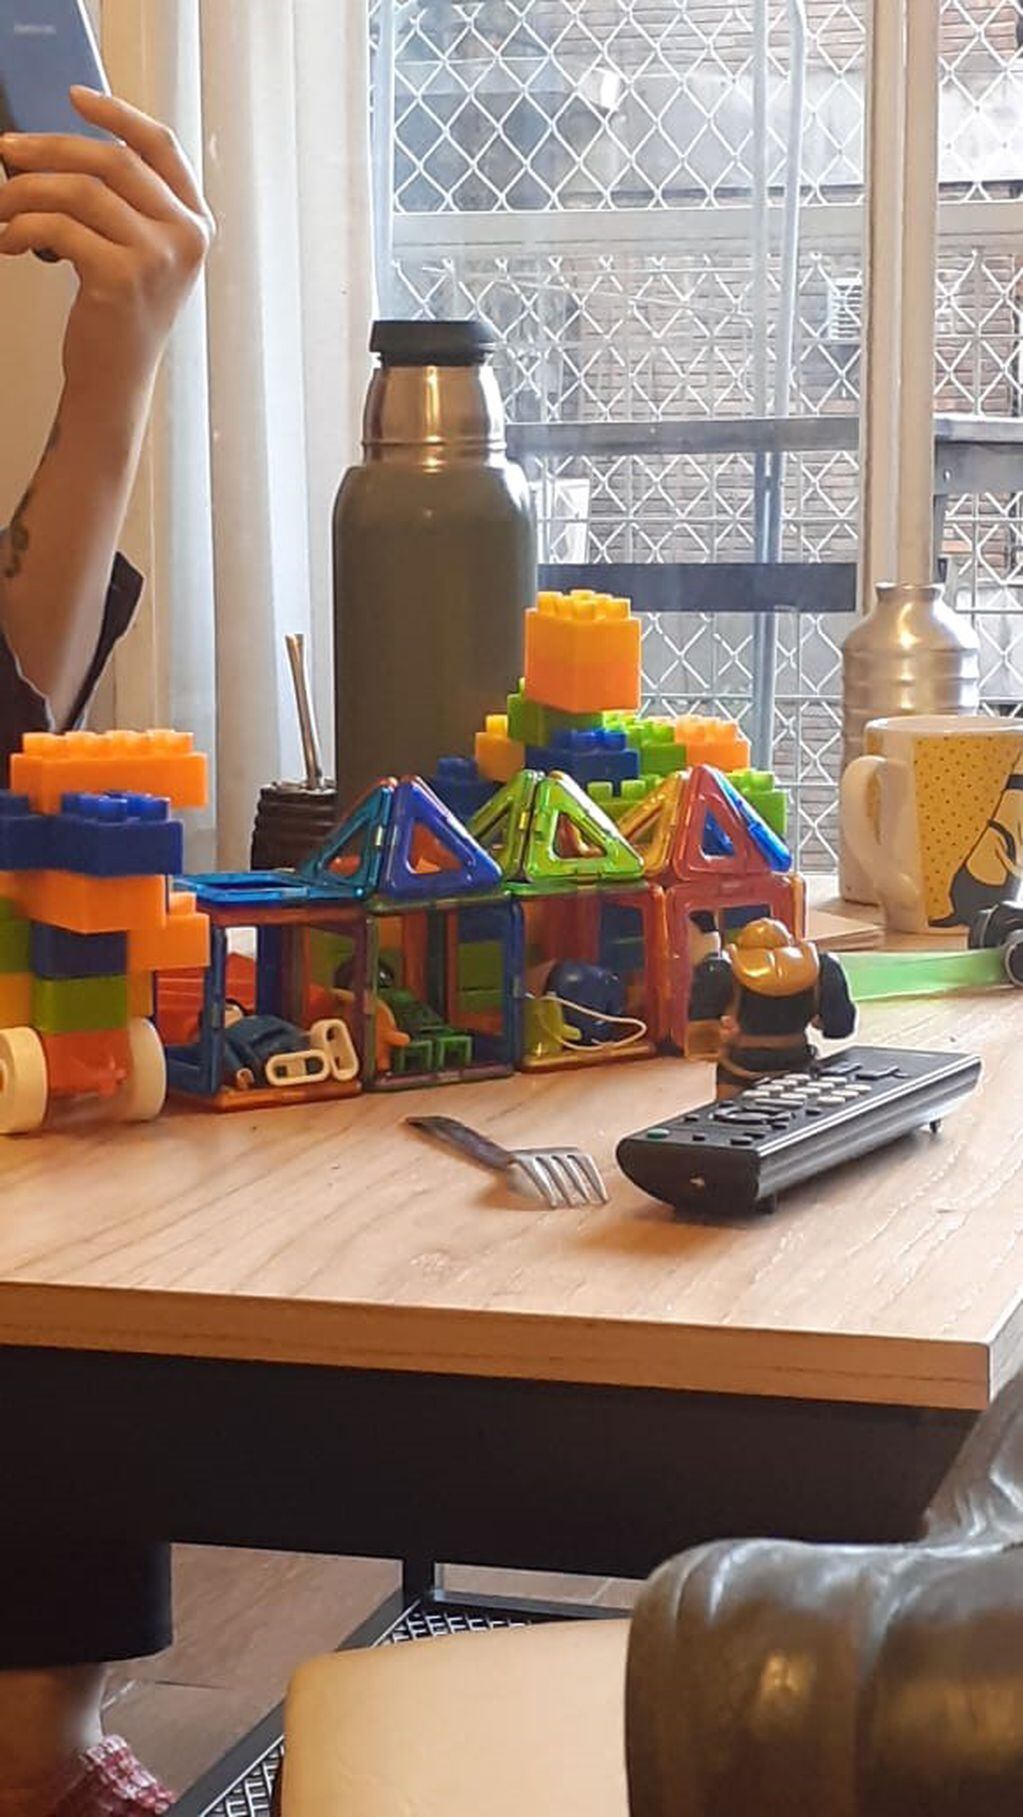 Galeria: los juguetes colonizan las casas durante la cuarentena